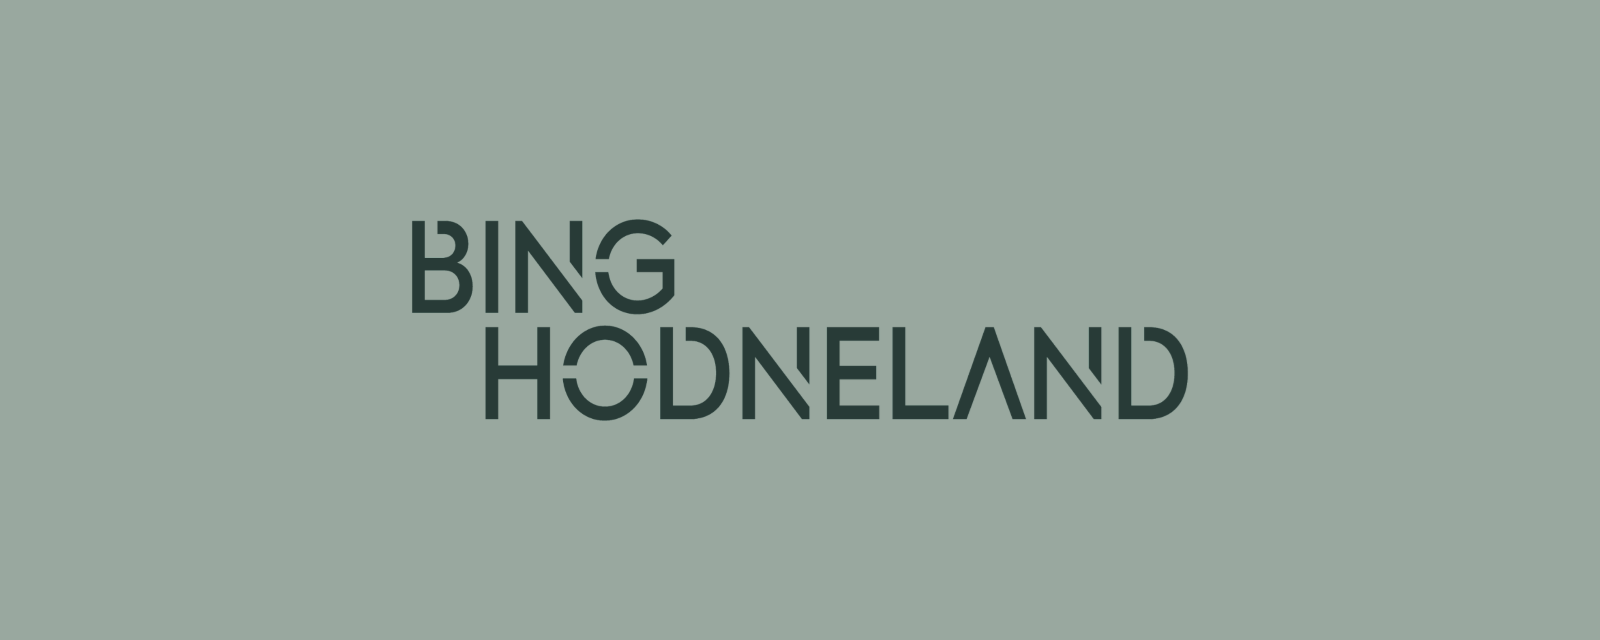 Bing Hodneland logo